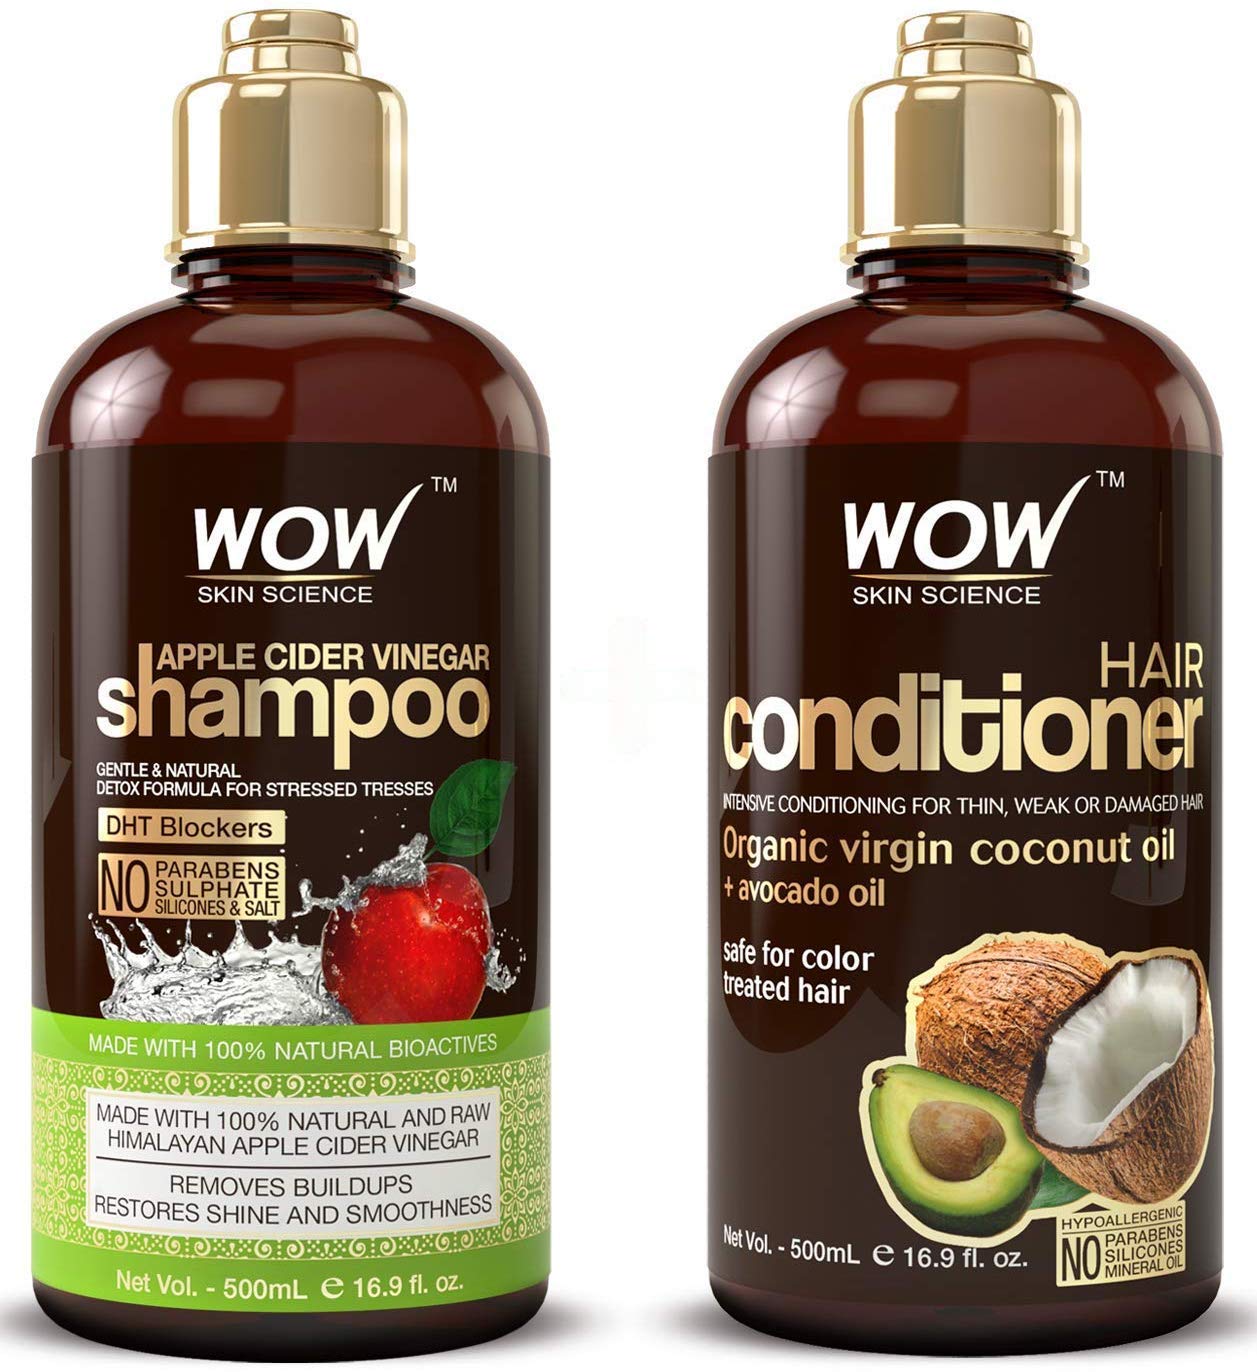 WOW Apple Cider Vinegar Shampoo & Hair Conditioner Set